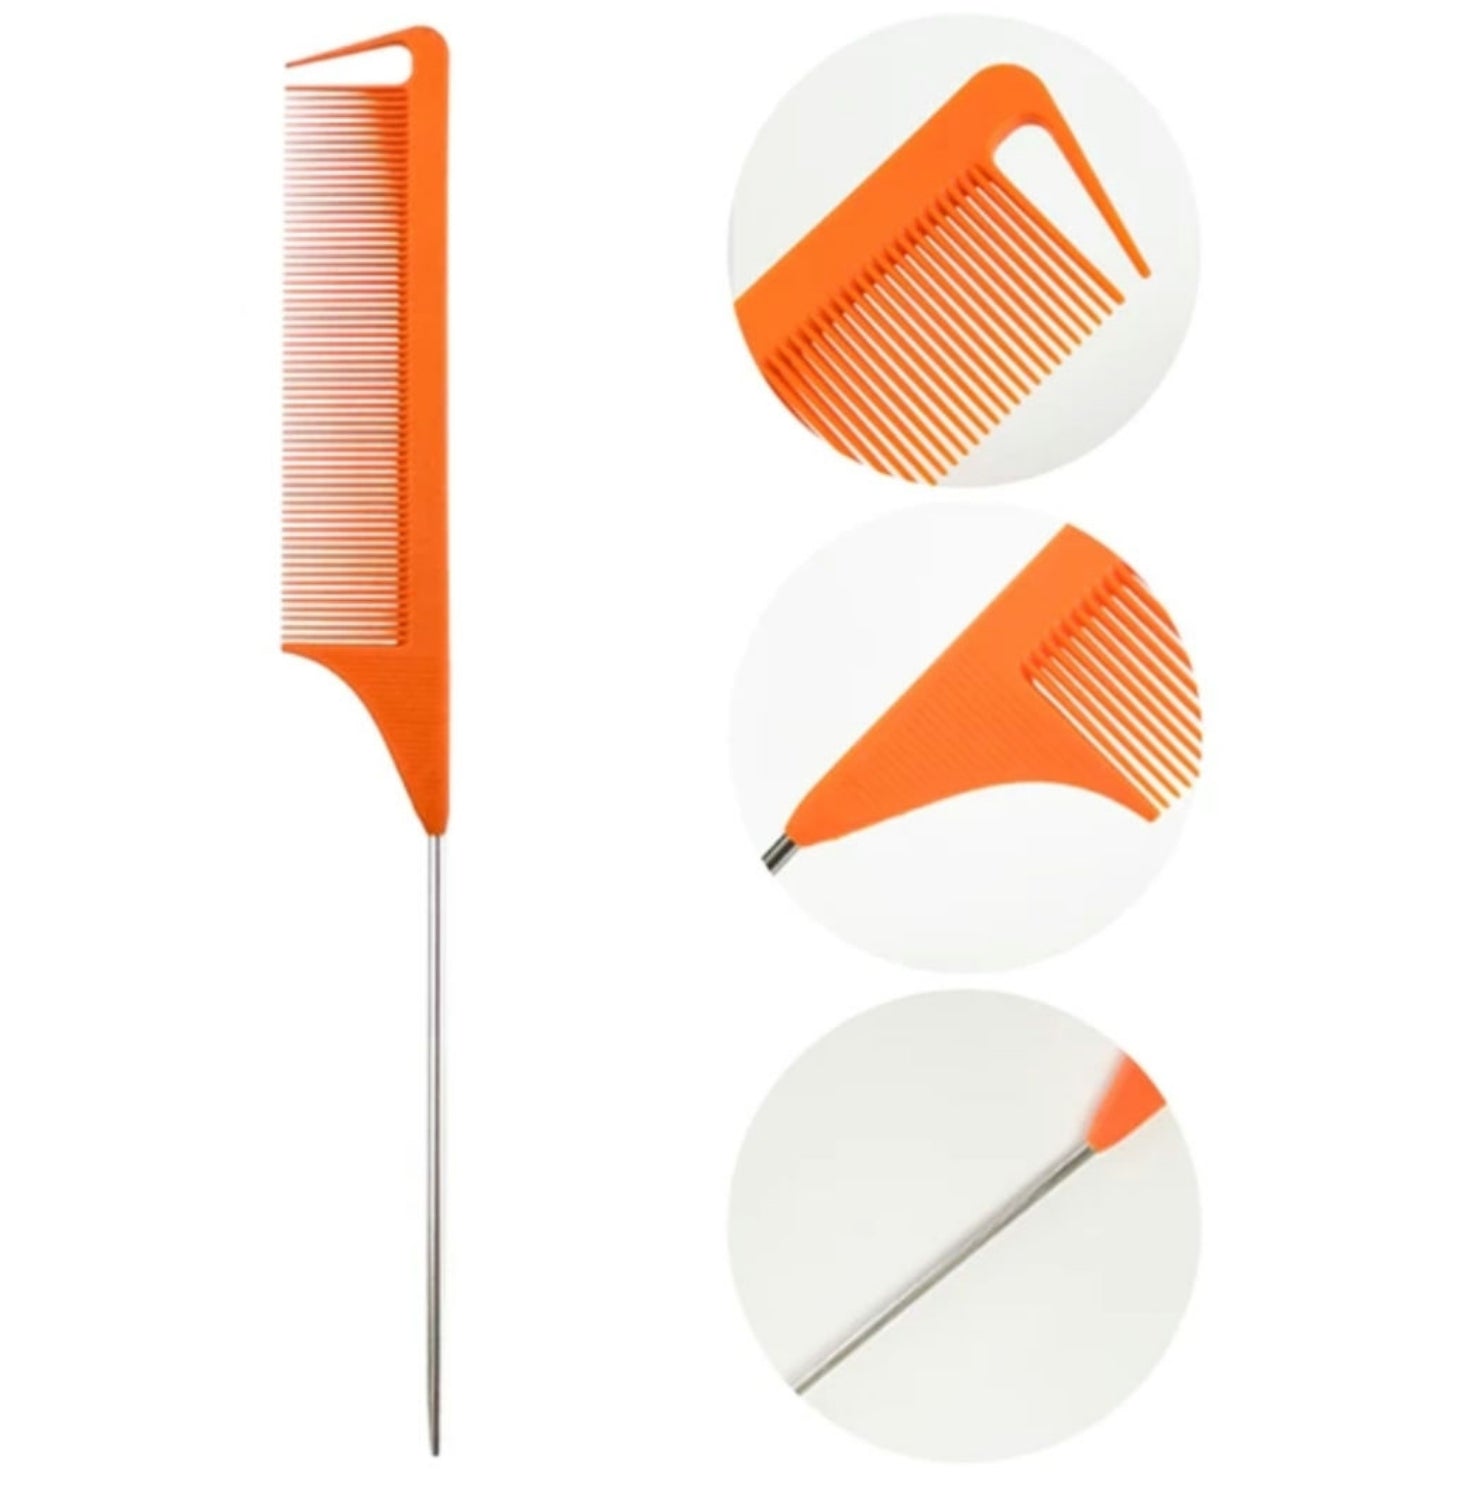 Keke's Precision Comb (Orange)